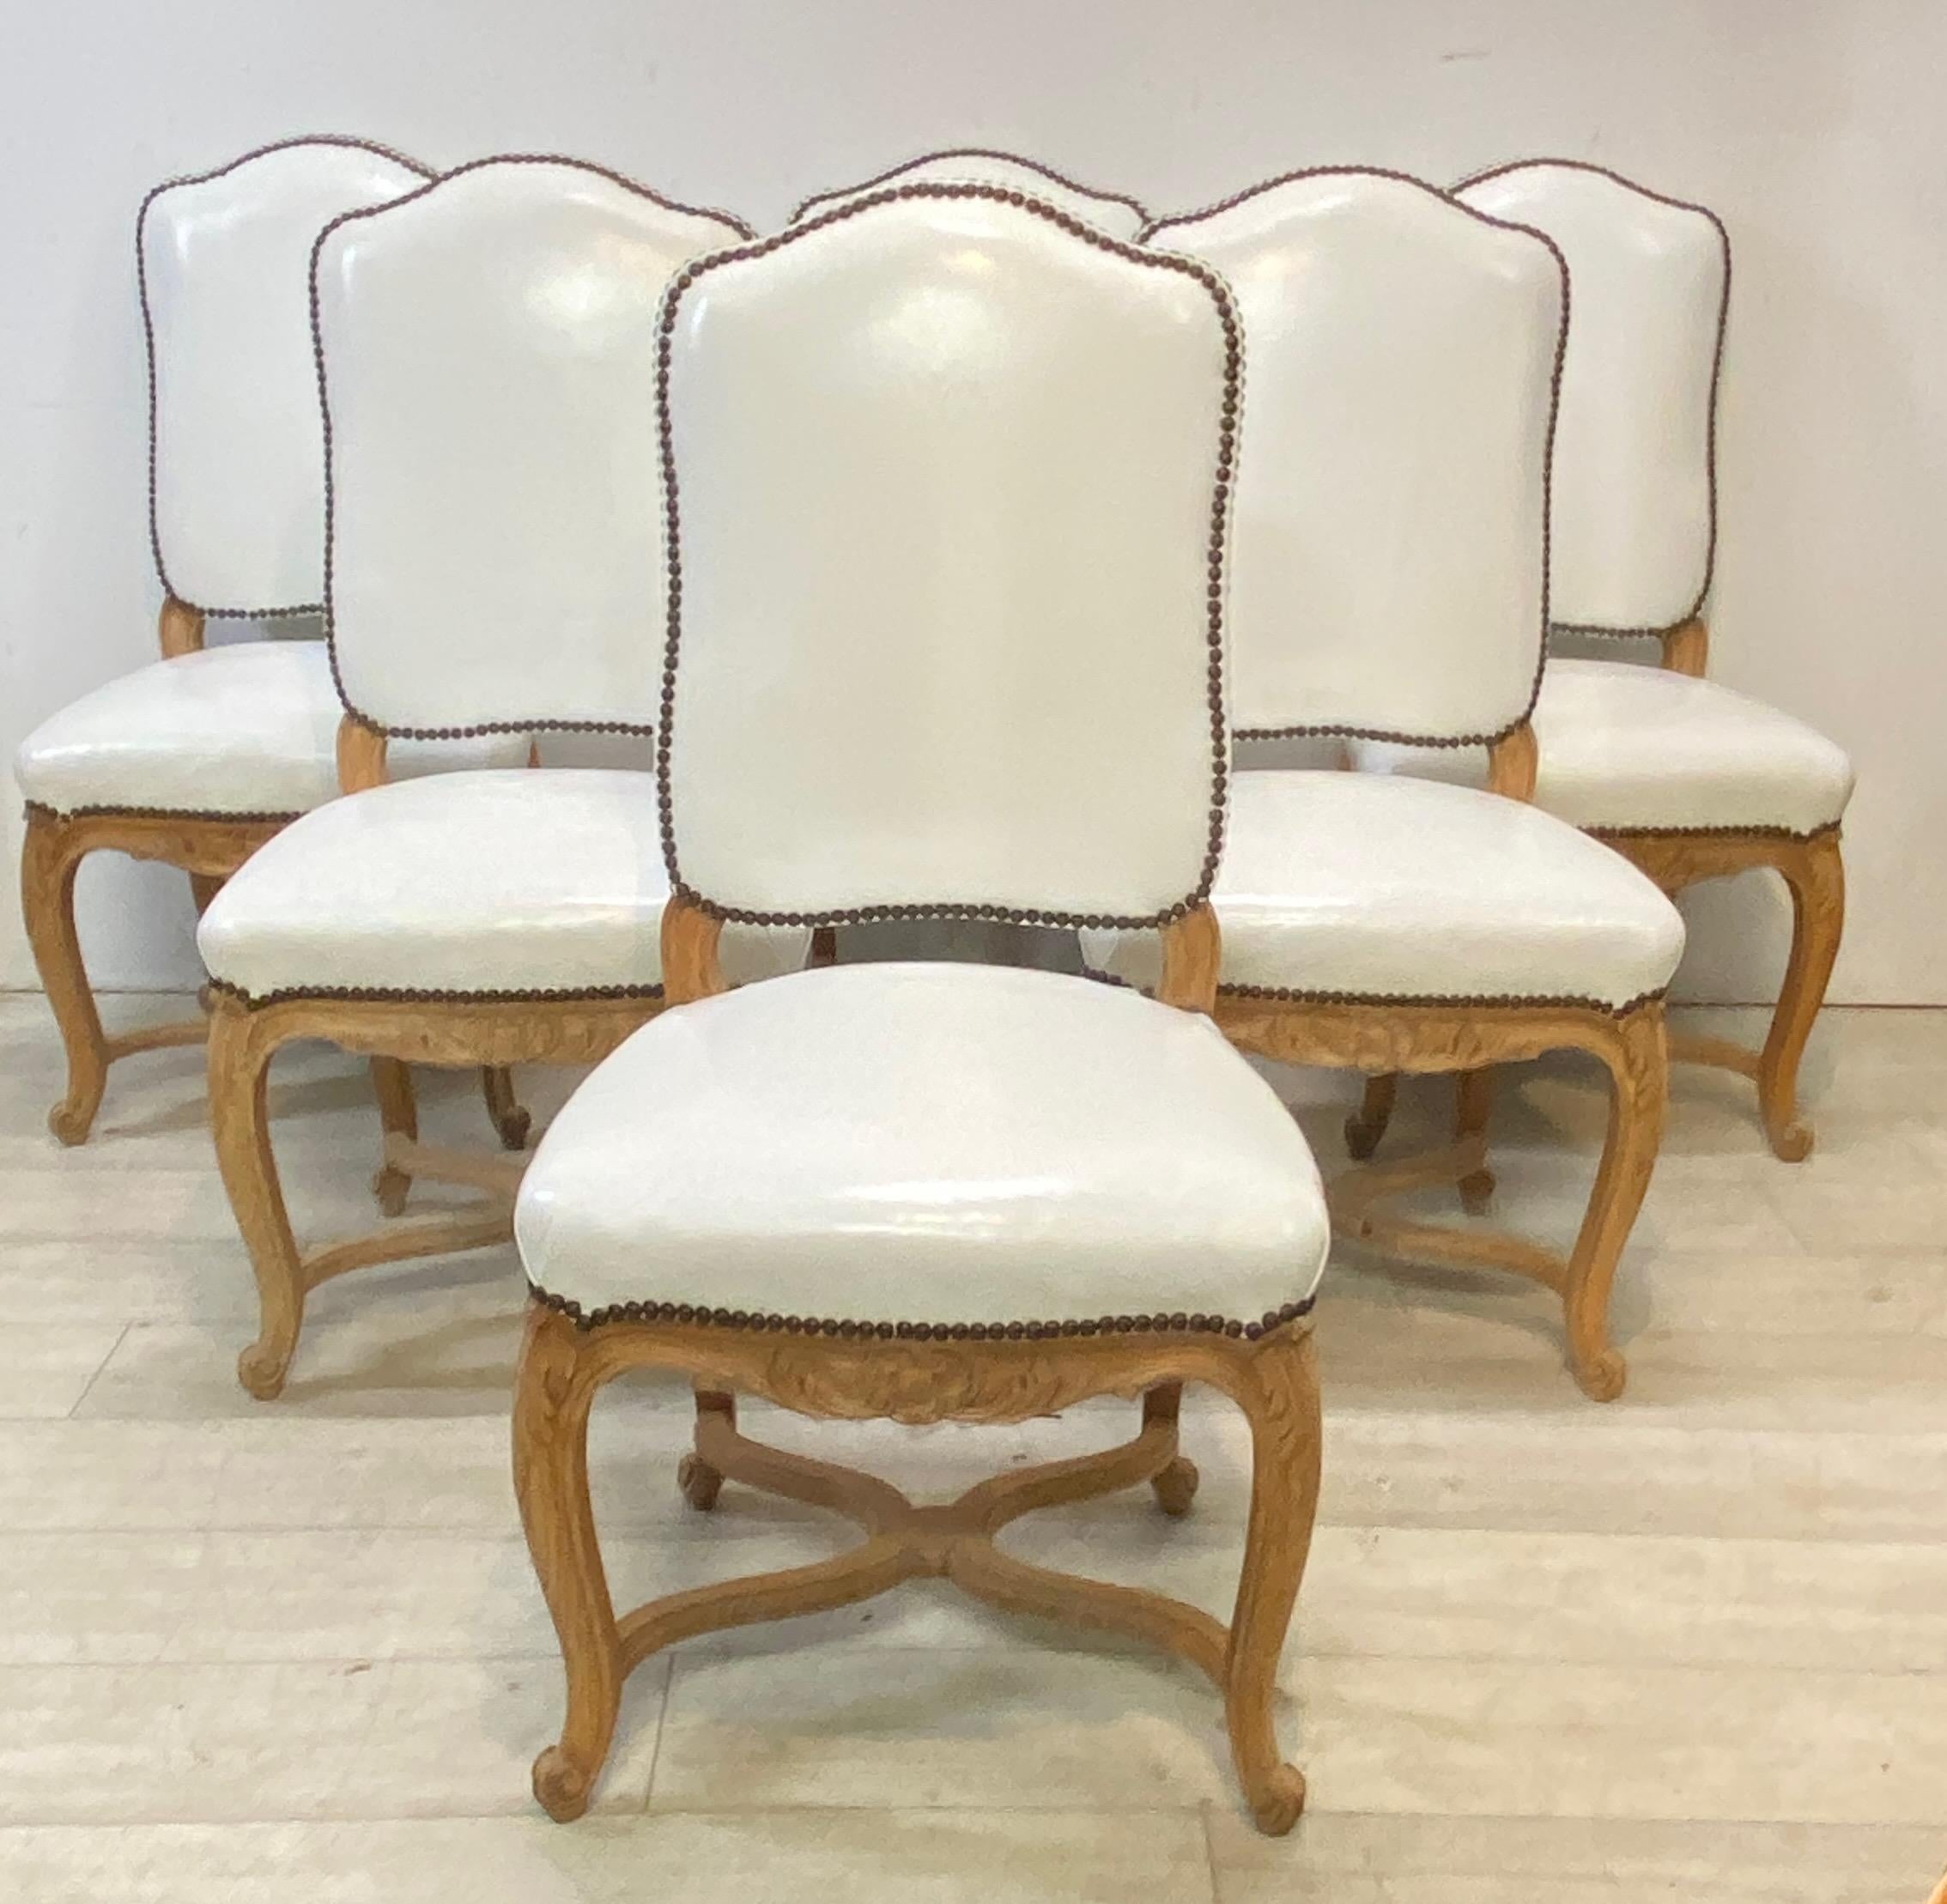 Conjunto de seis sillas de comedor de madera tallada y cuero blanco. De la finca en Calistoga, California, del artista Ira Yaeger.
Las sillas son robustas y sólidas, con algunos indicios menores de desgaste en el cuero.
Francia, mediados del siglo